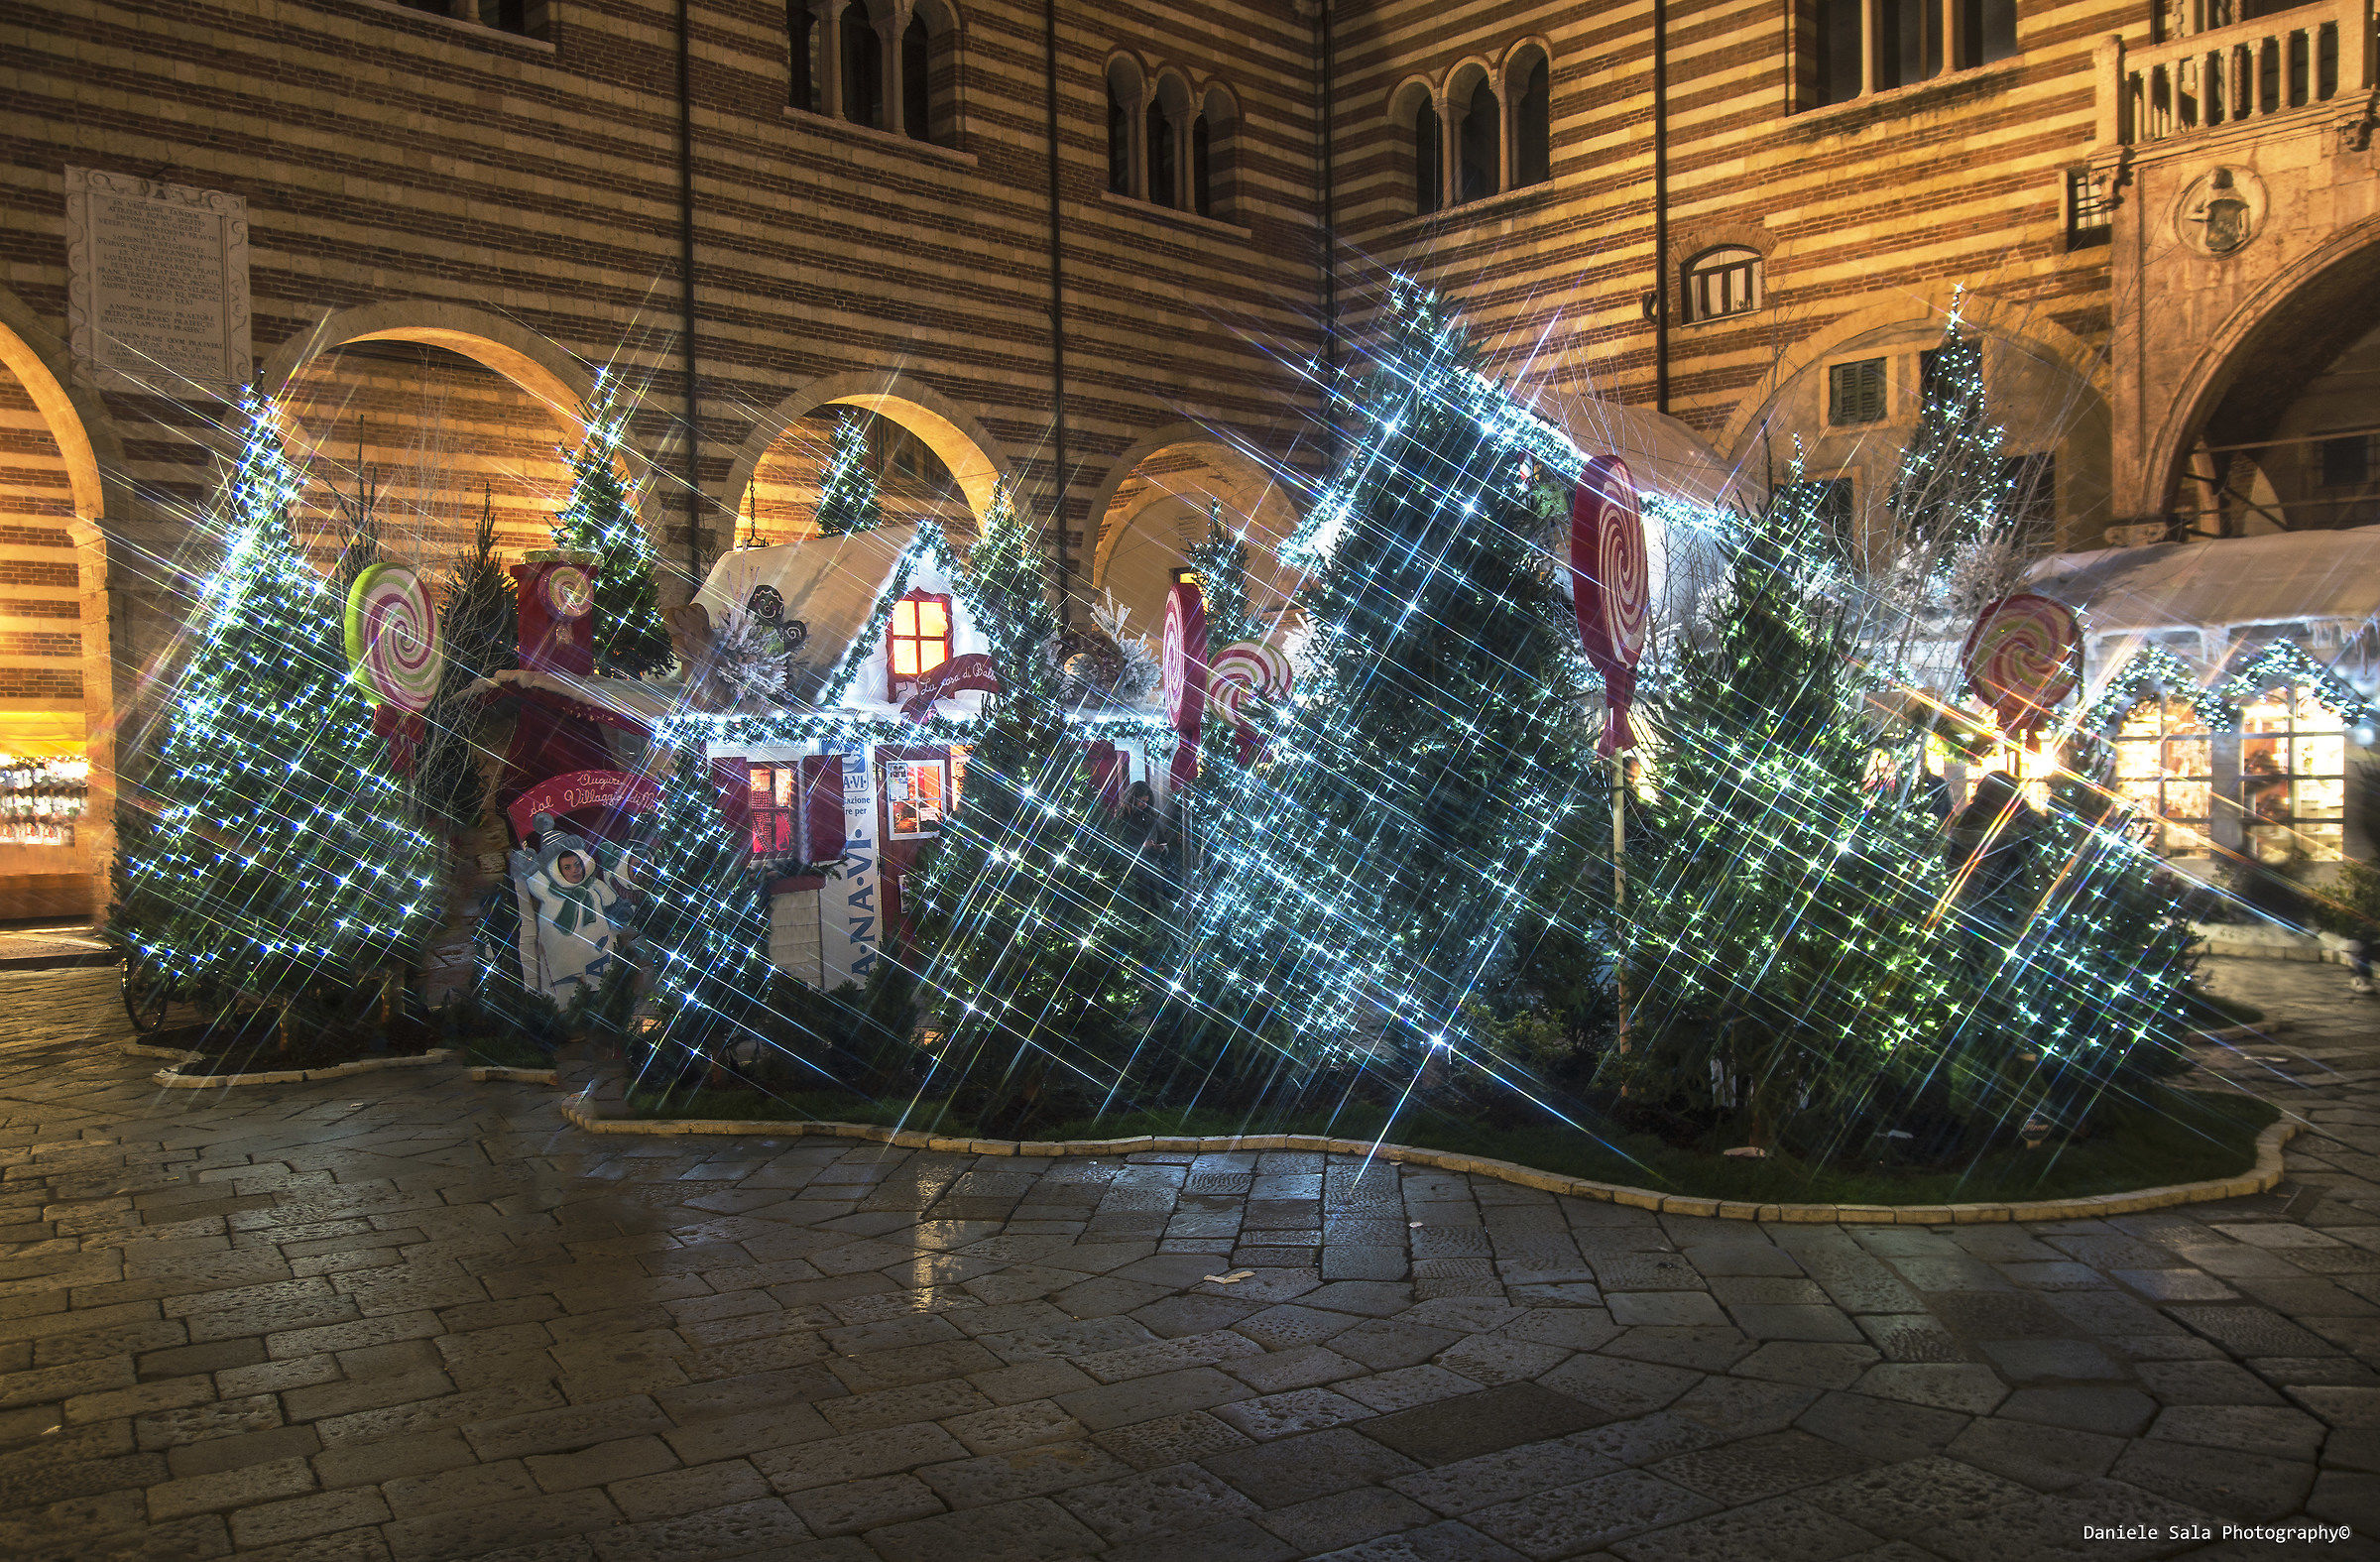 Natale in Piazza dei Signori.....